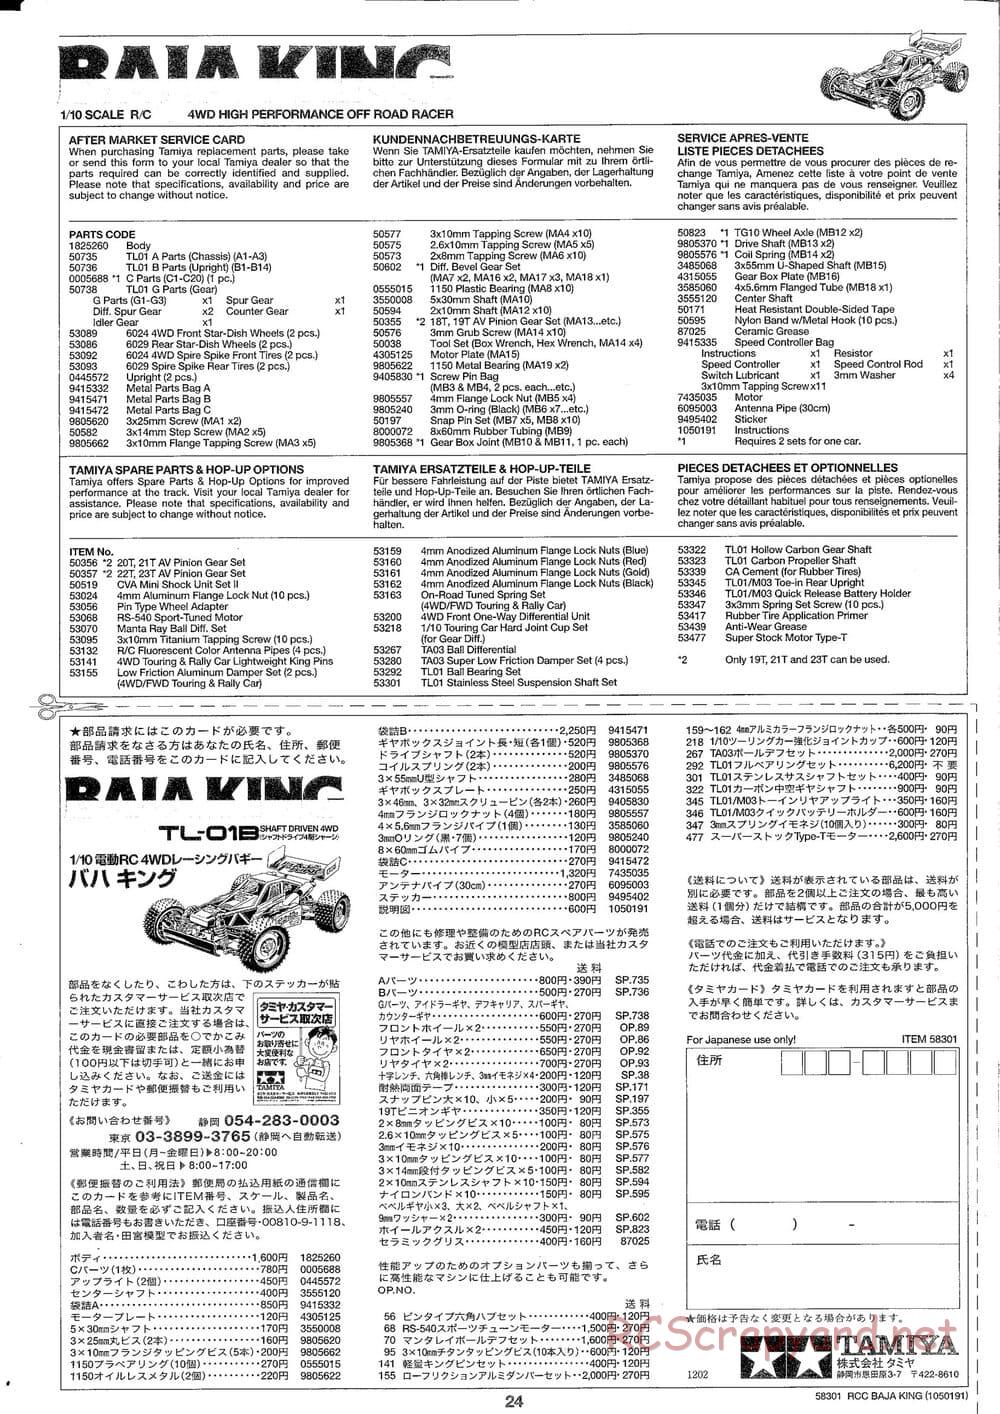 Tamiya - Baja King - TL-01B Chassis - Manual - Page 24